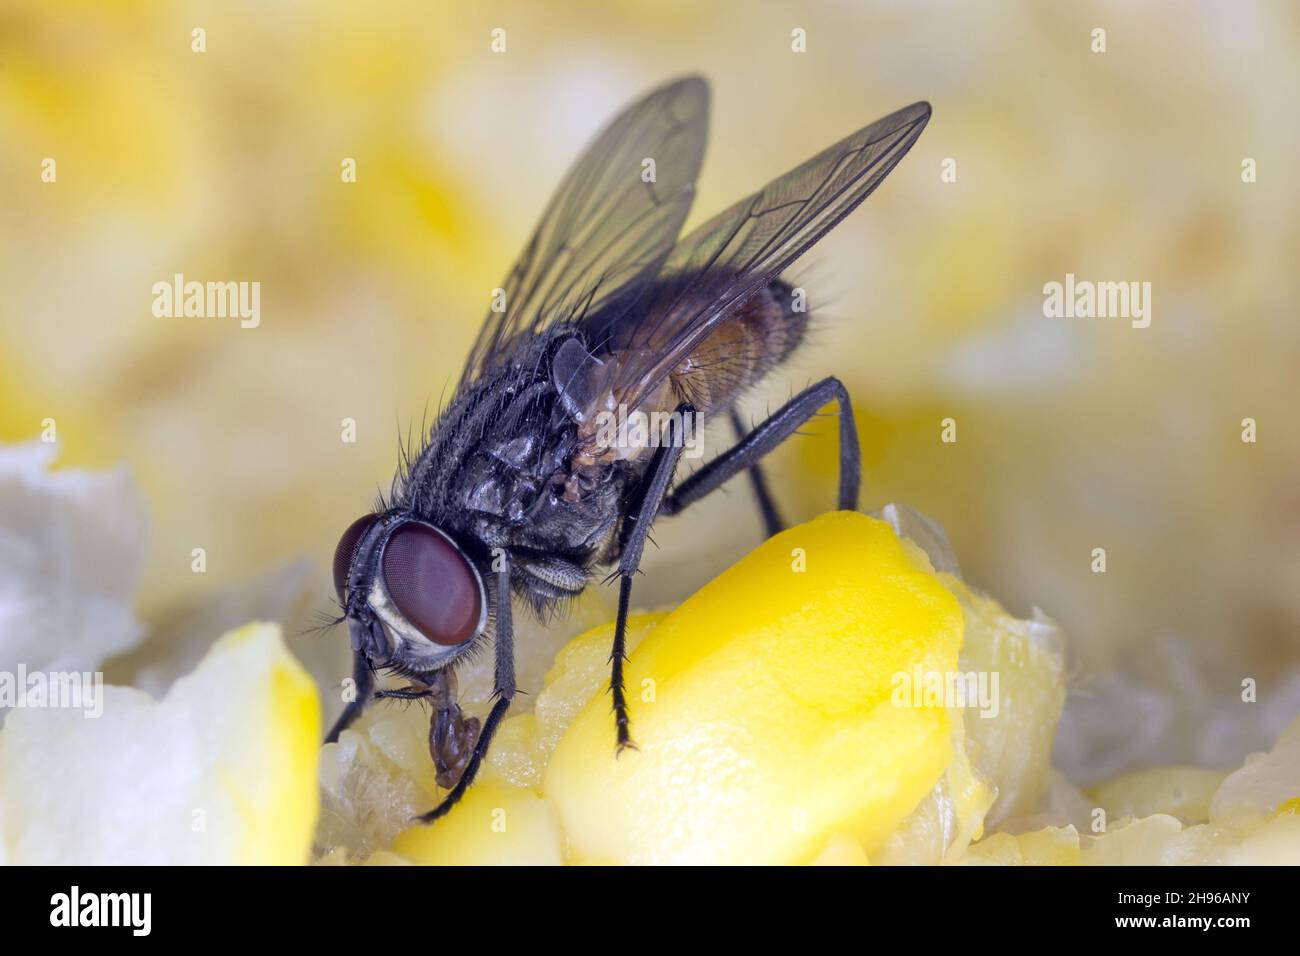 Die Hausfliege Musca domestica. Häufiges und belastendes Insekt in Häusern Stockfoto